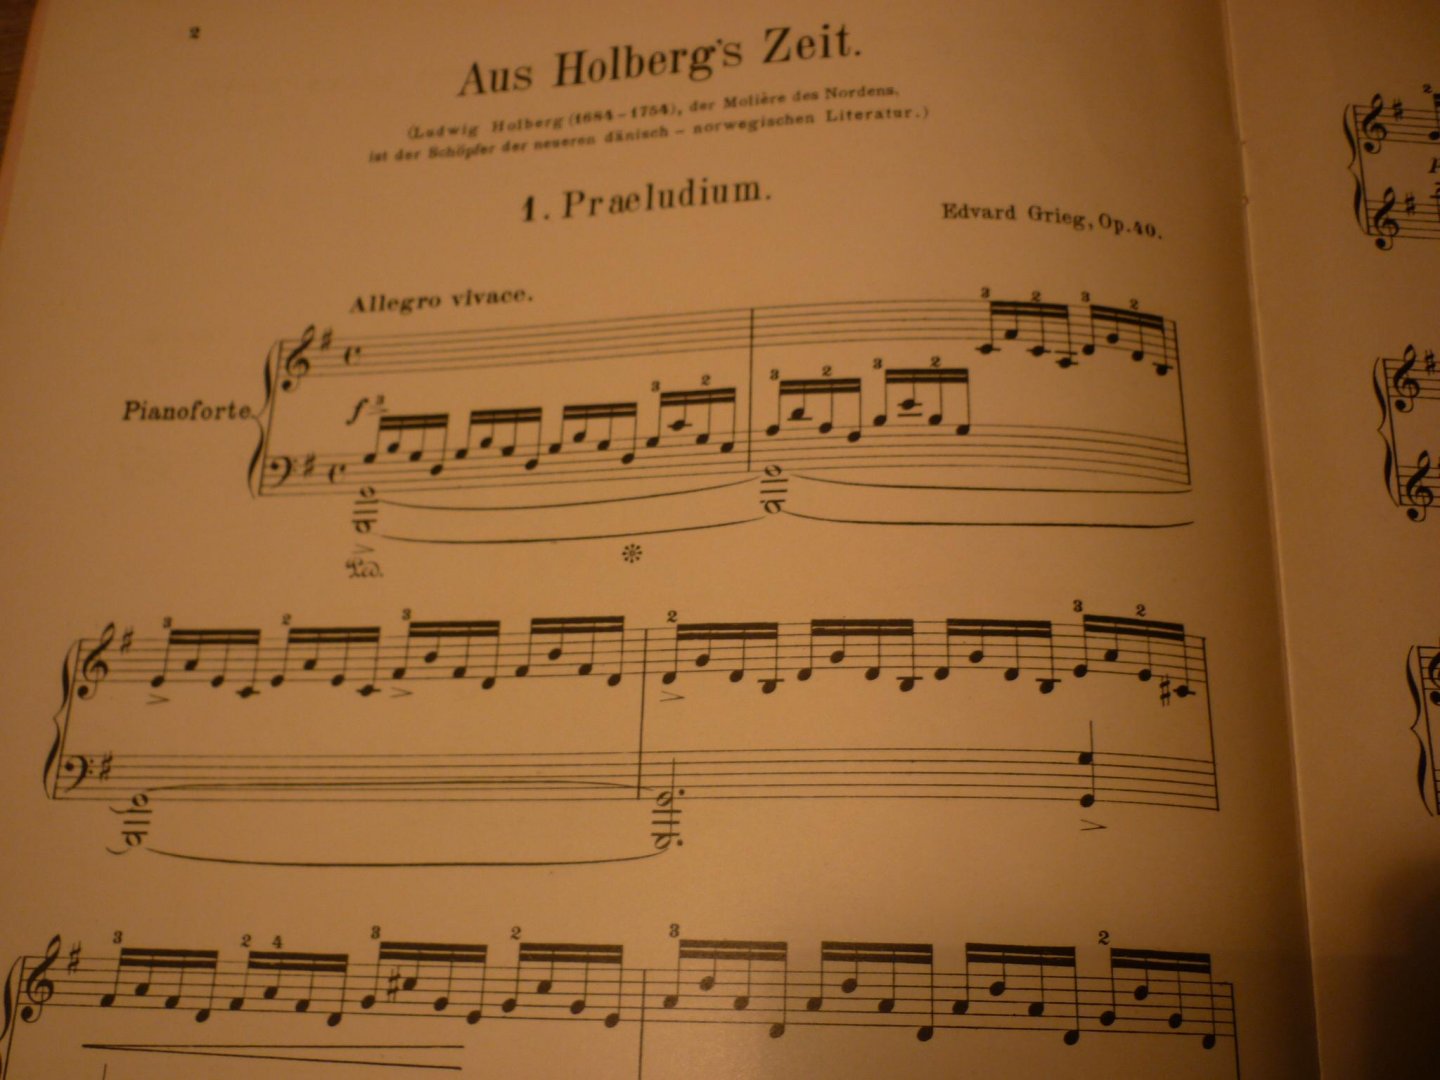 Grieg; Edvard (1843–1907) - Aus Holbergs Zeit op. 40 Suite im alten Stil - für Klavier; voor Piano - Muziekboek